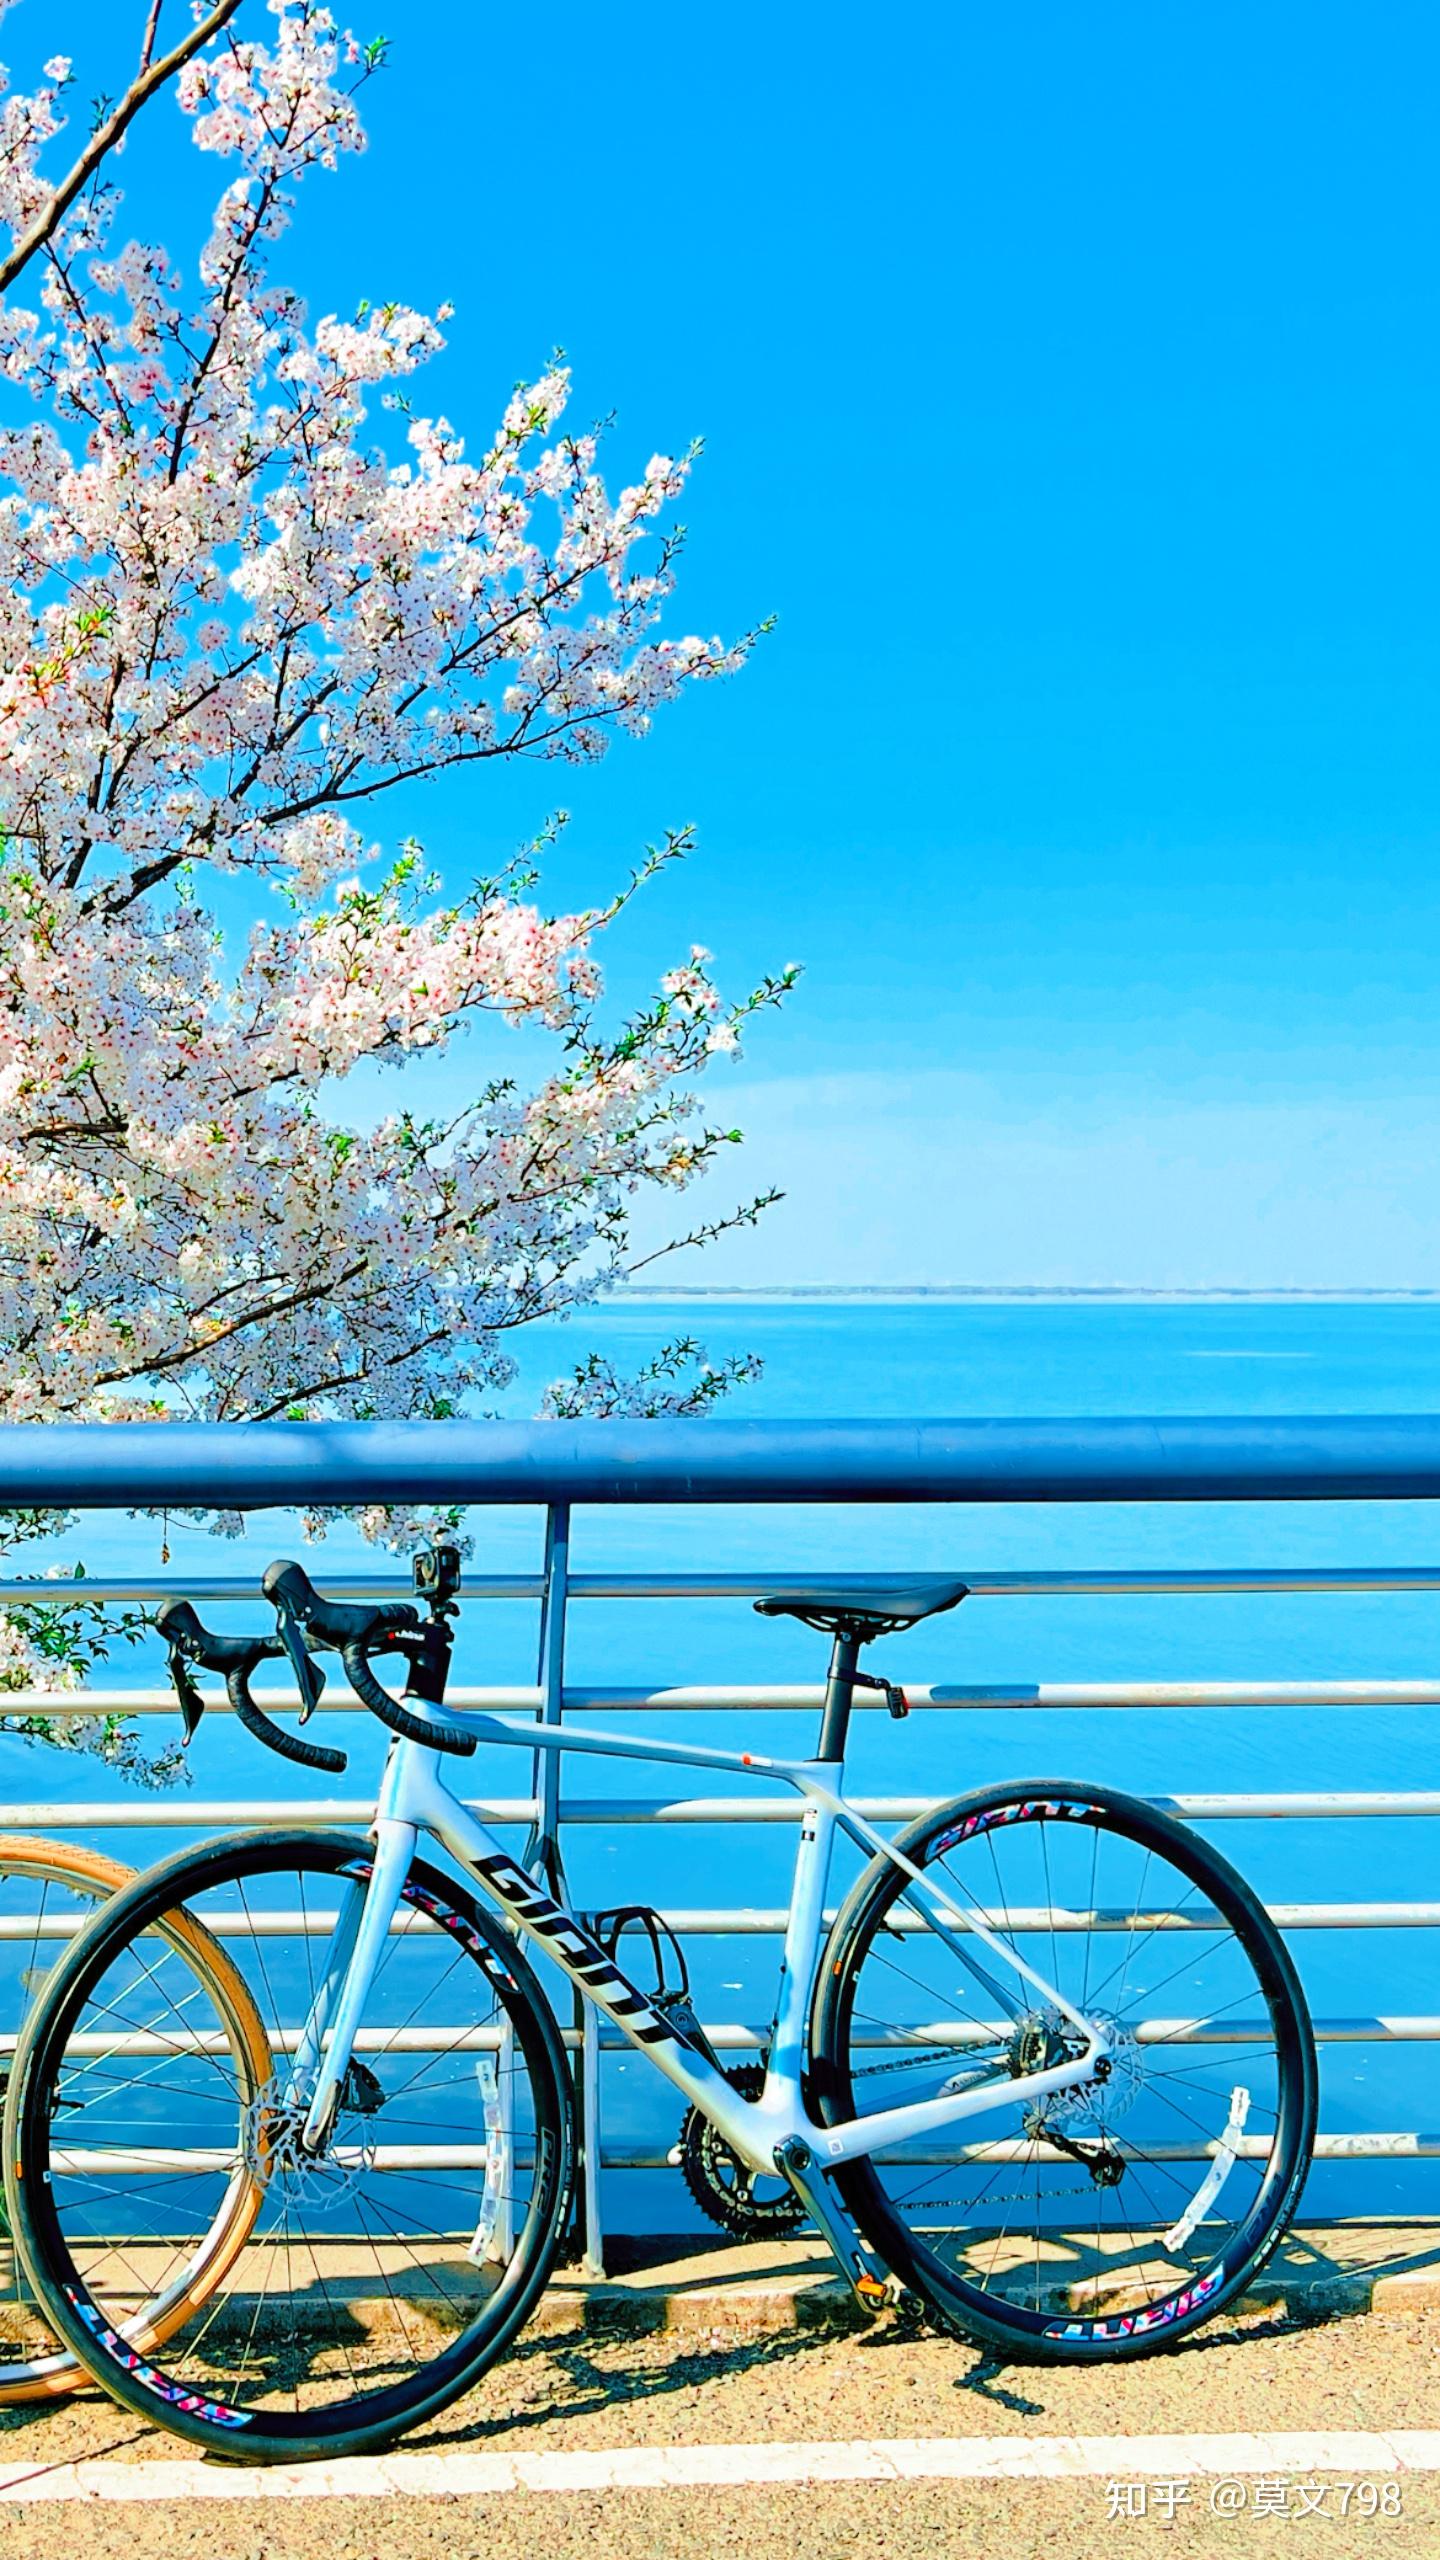 6 月 3 日是世界自行车日,骑自行车给你的生活带来了哪些改变?